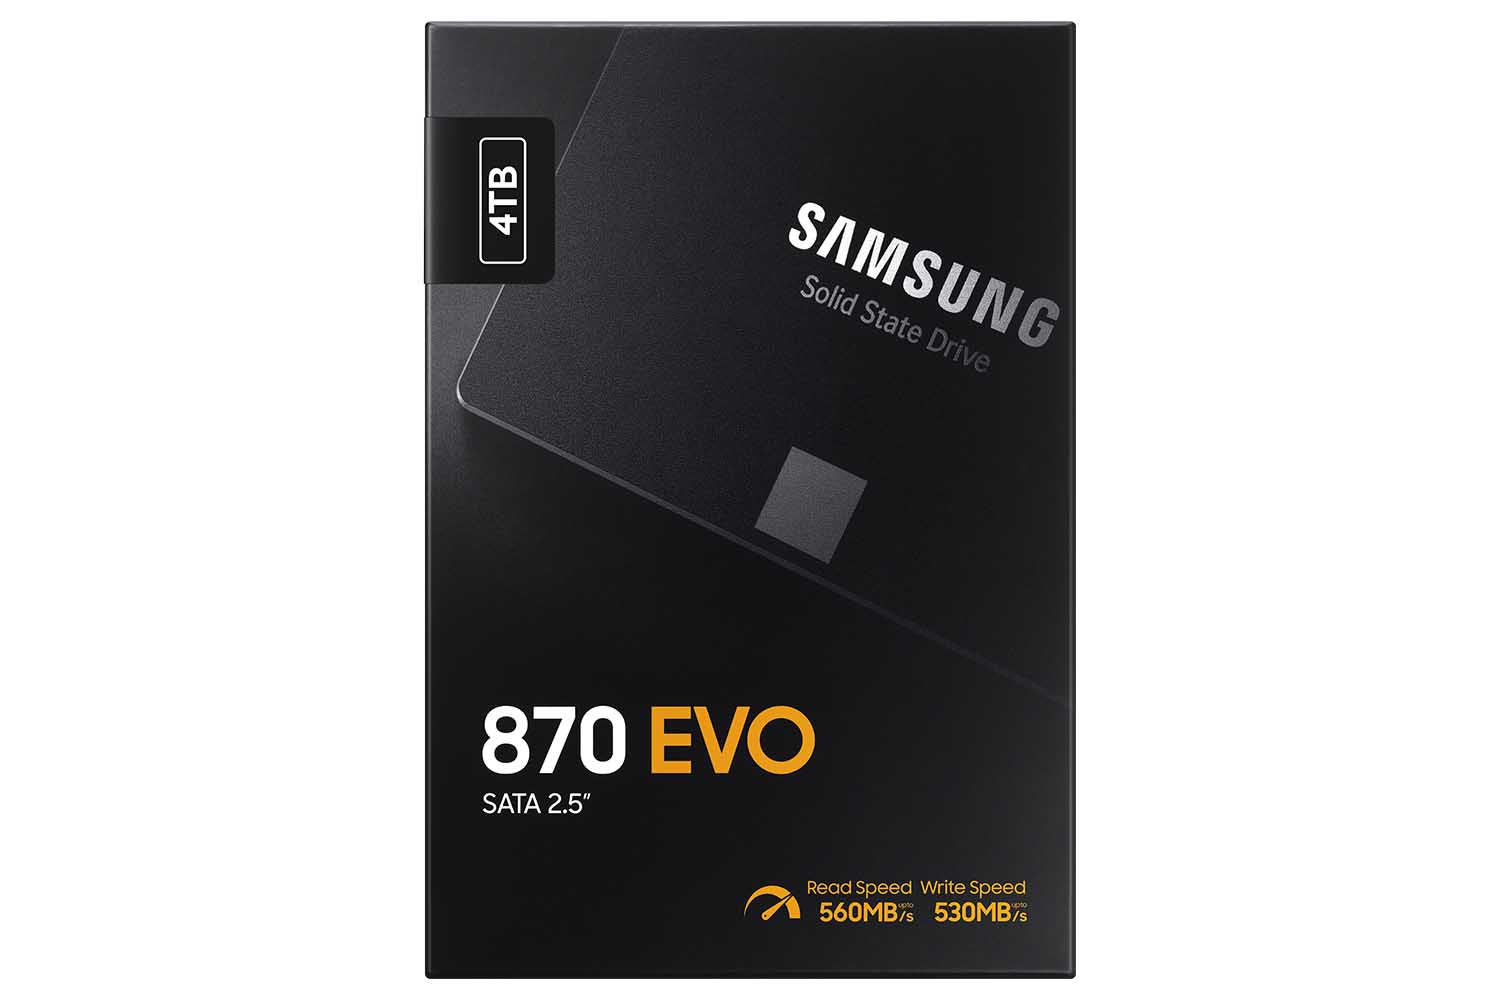 Le nuove unità SSD Samsung 870 EVO promettono performance ancora superiori